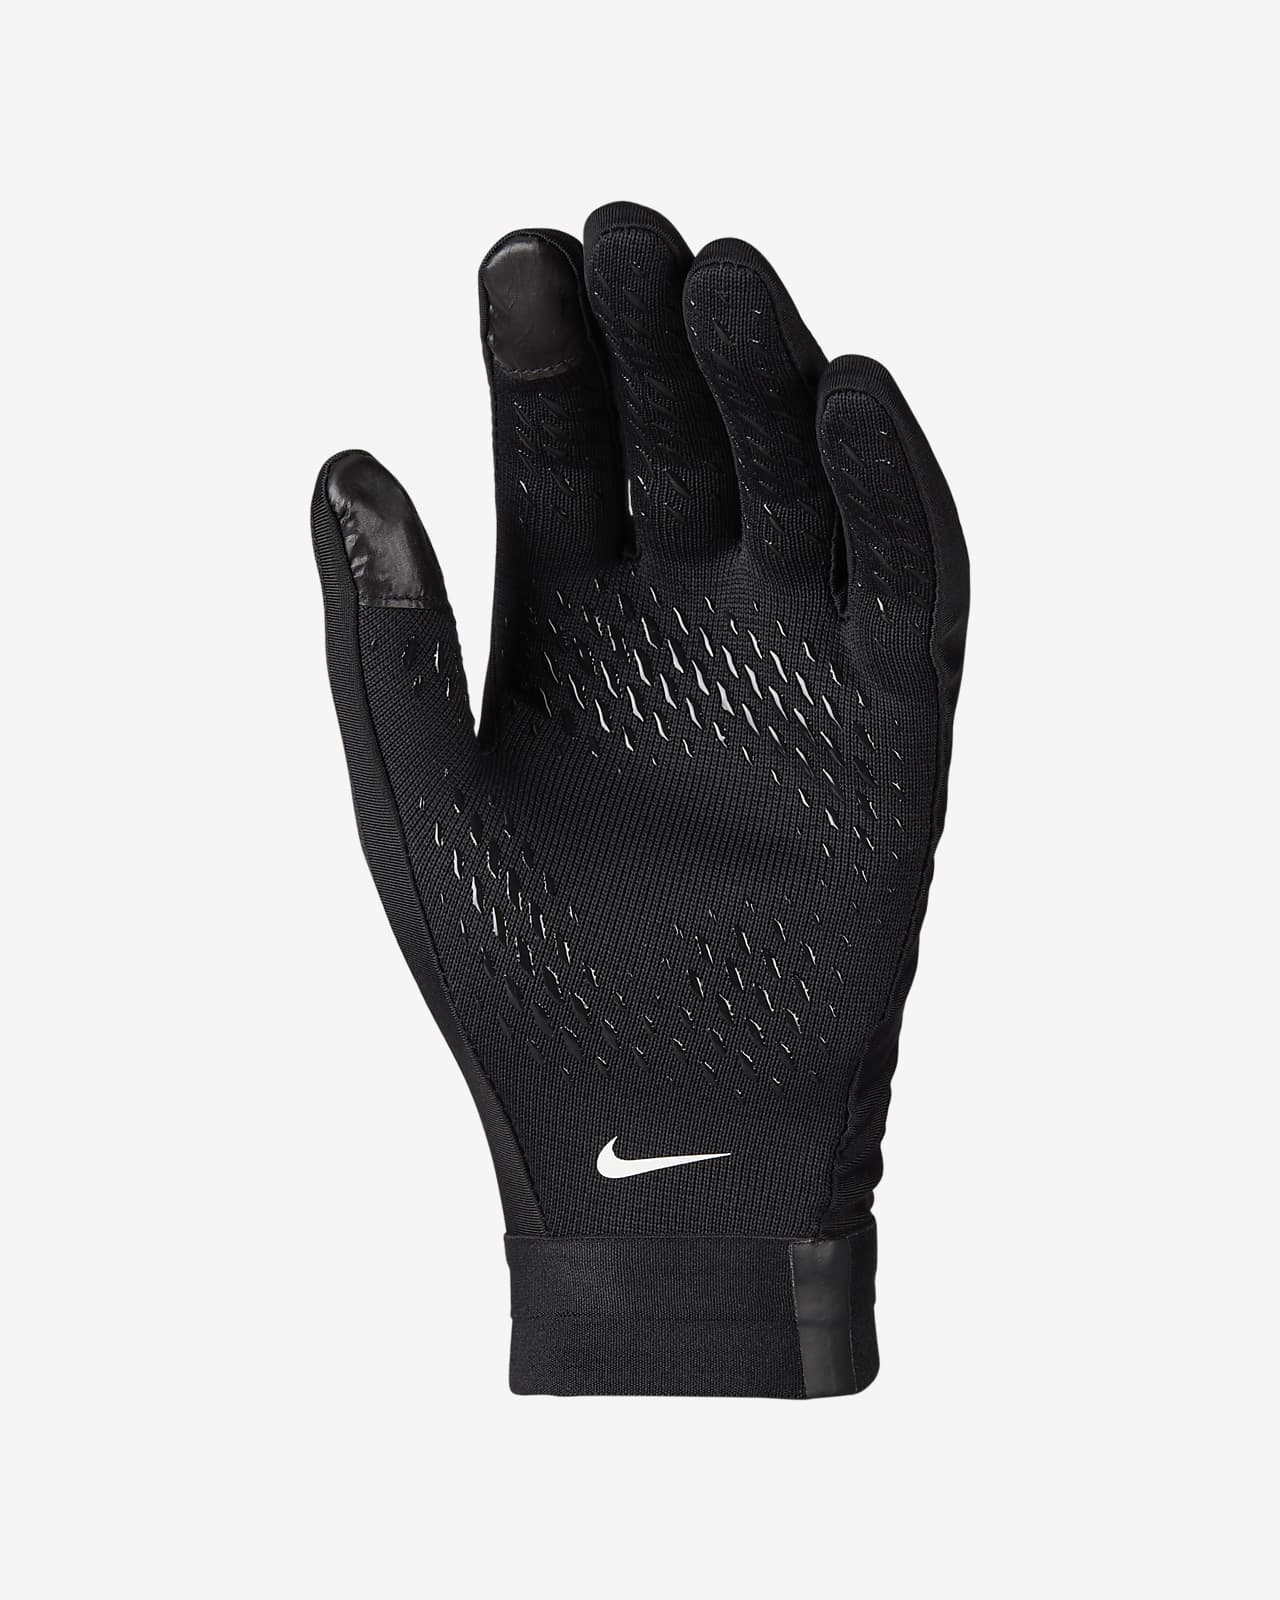 Academy Football Gloves QHkX39 